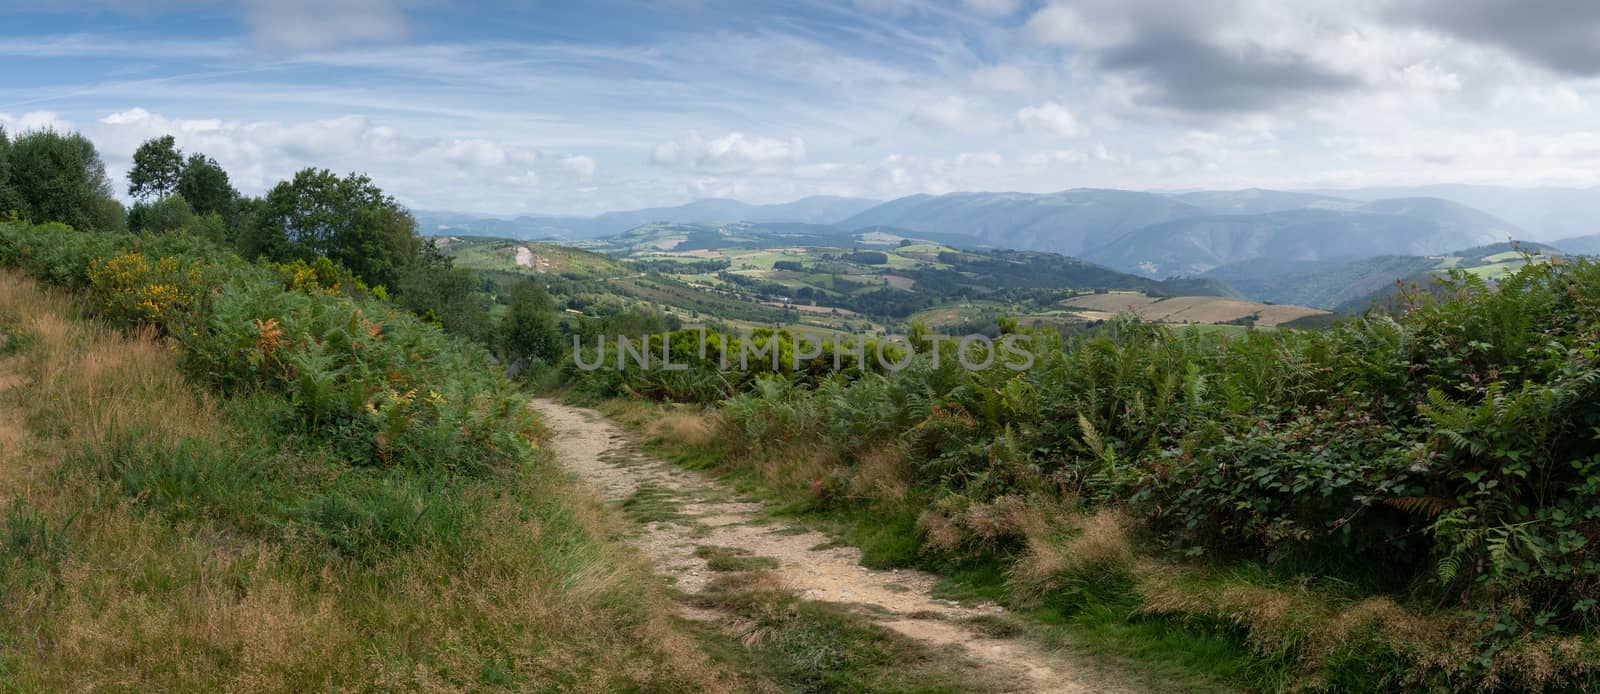 Camino Primitivo, Asturias, Spain by alfotokunst